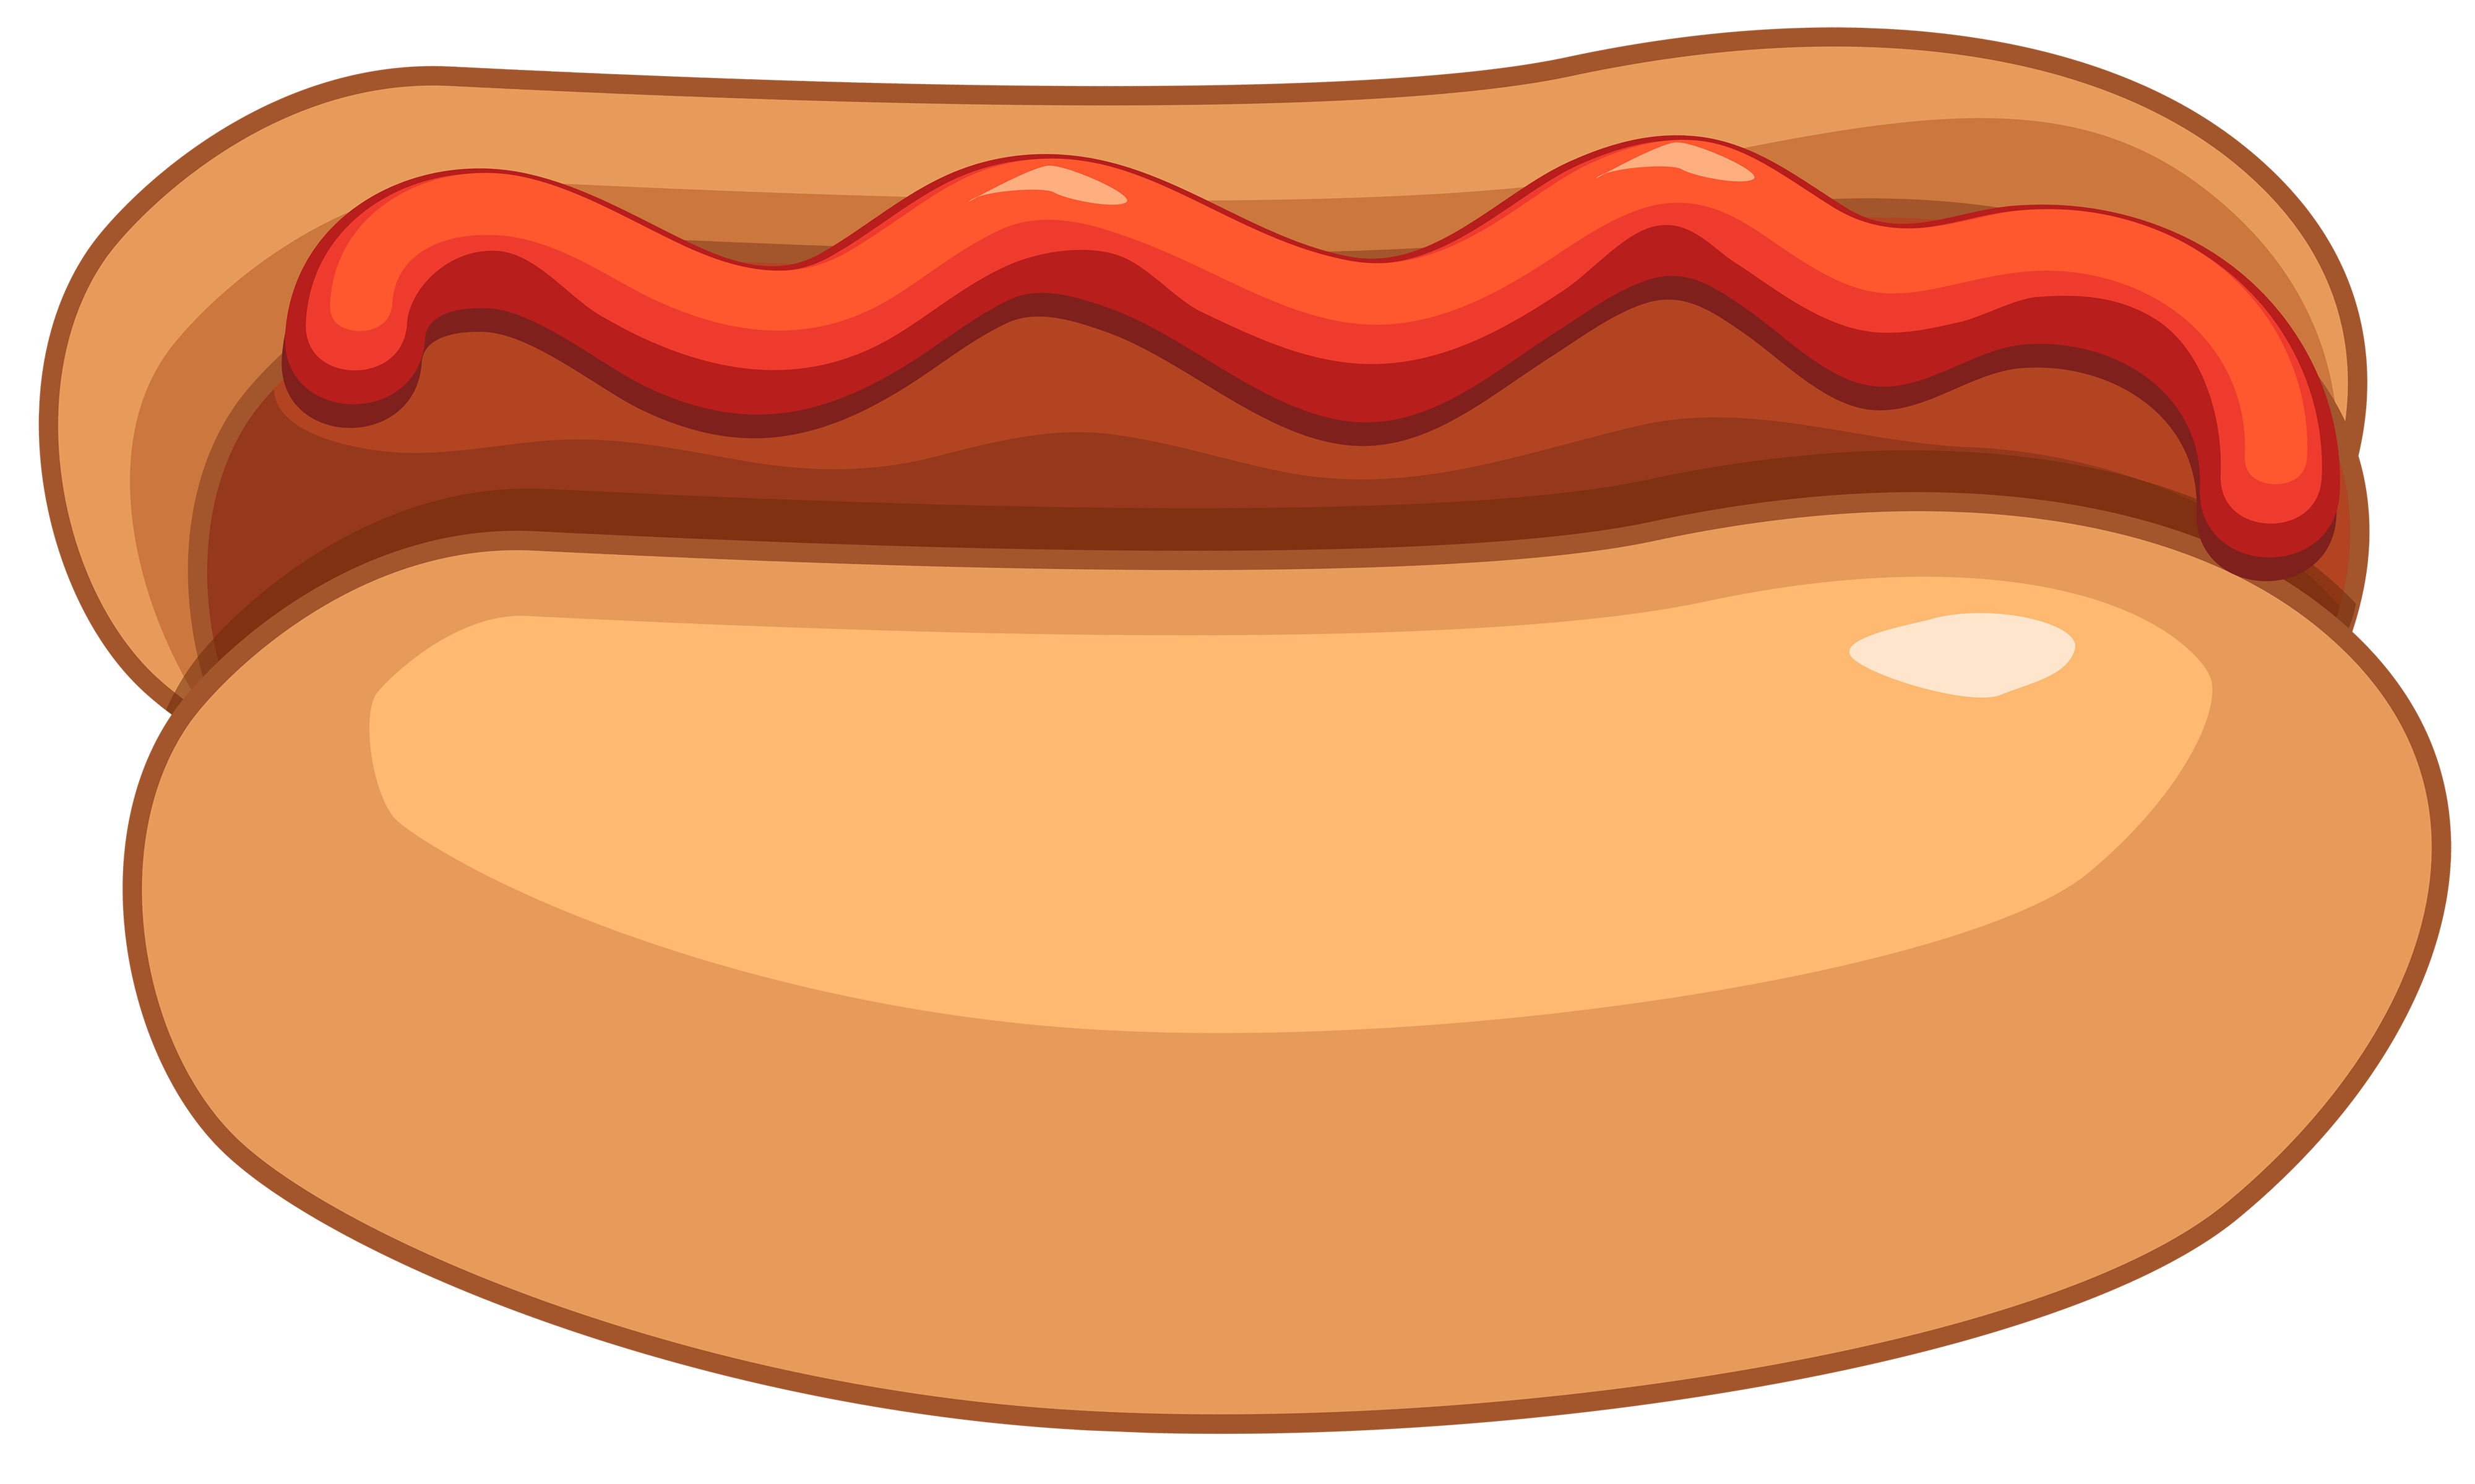 Hot dog and ketchup. Waffle clipart hotdog